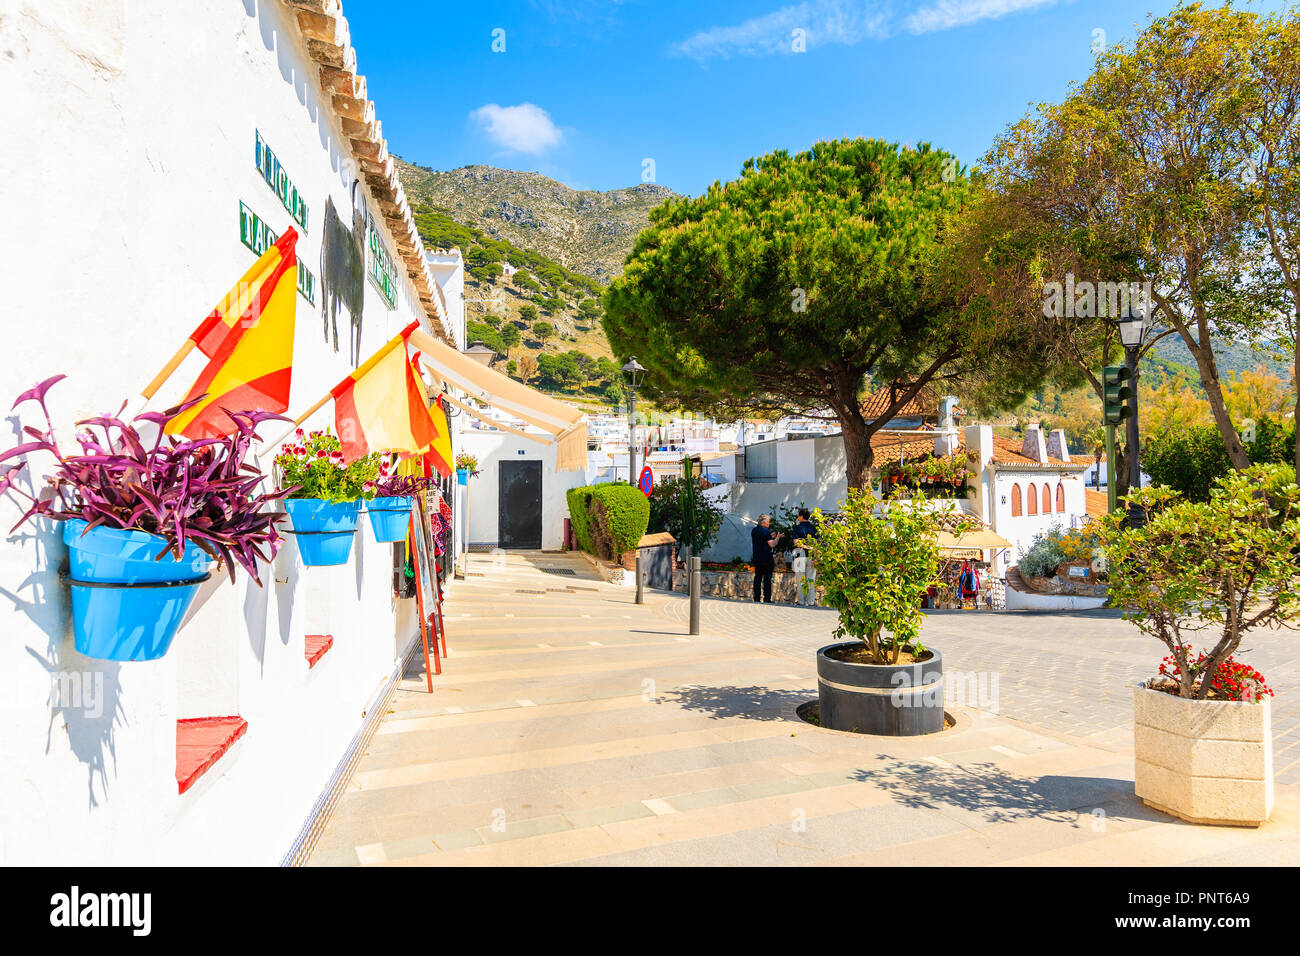 Stadt Mijas, Spanien - Mai 9, 2018: Straße mit weissen Häusern im malerischen Dorf Mijas, Andalusien. Spanien ist am meisten von Touristen besuchten Landes Stockfoto